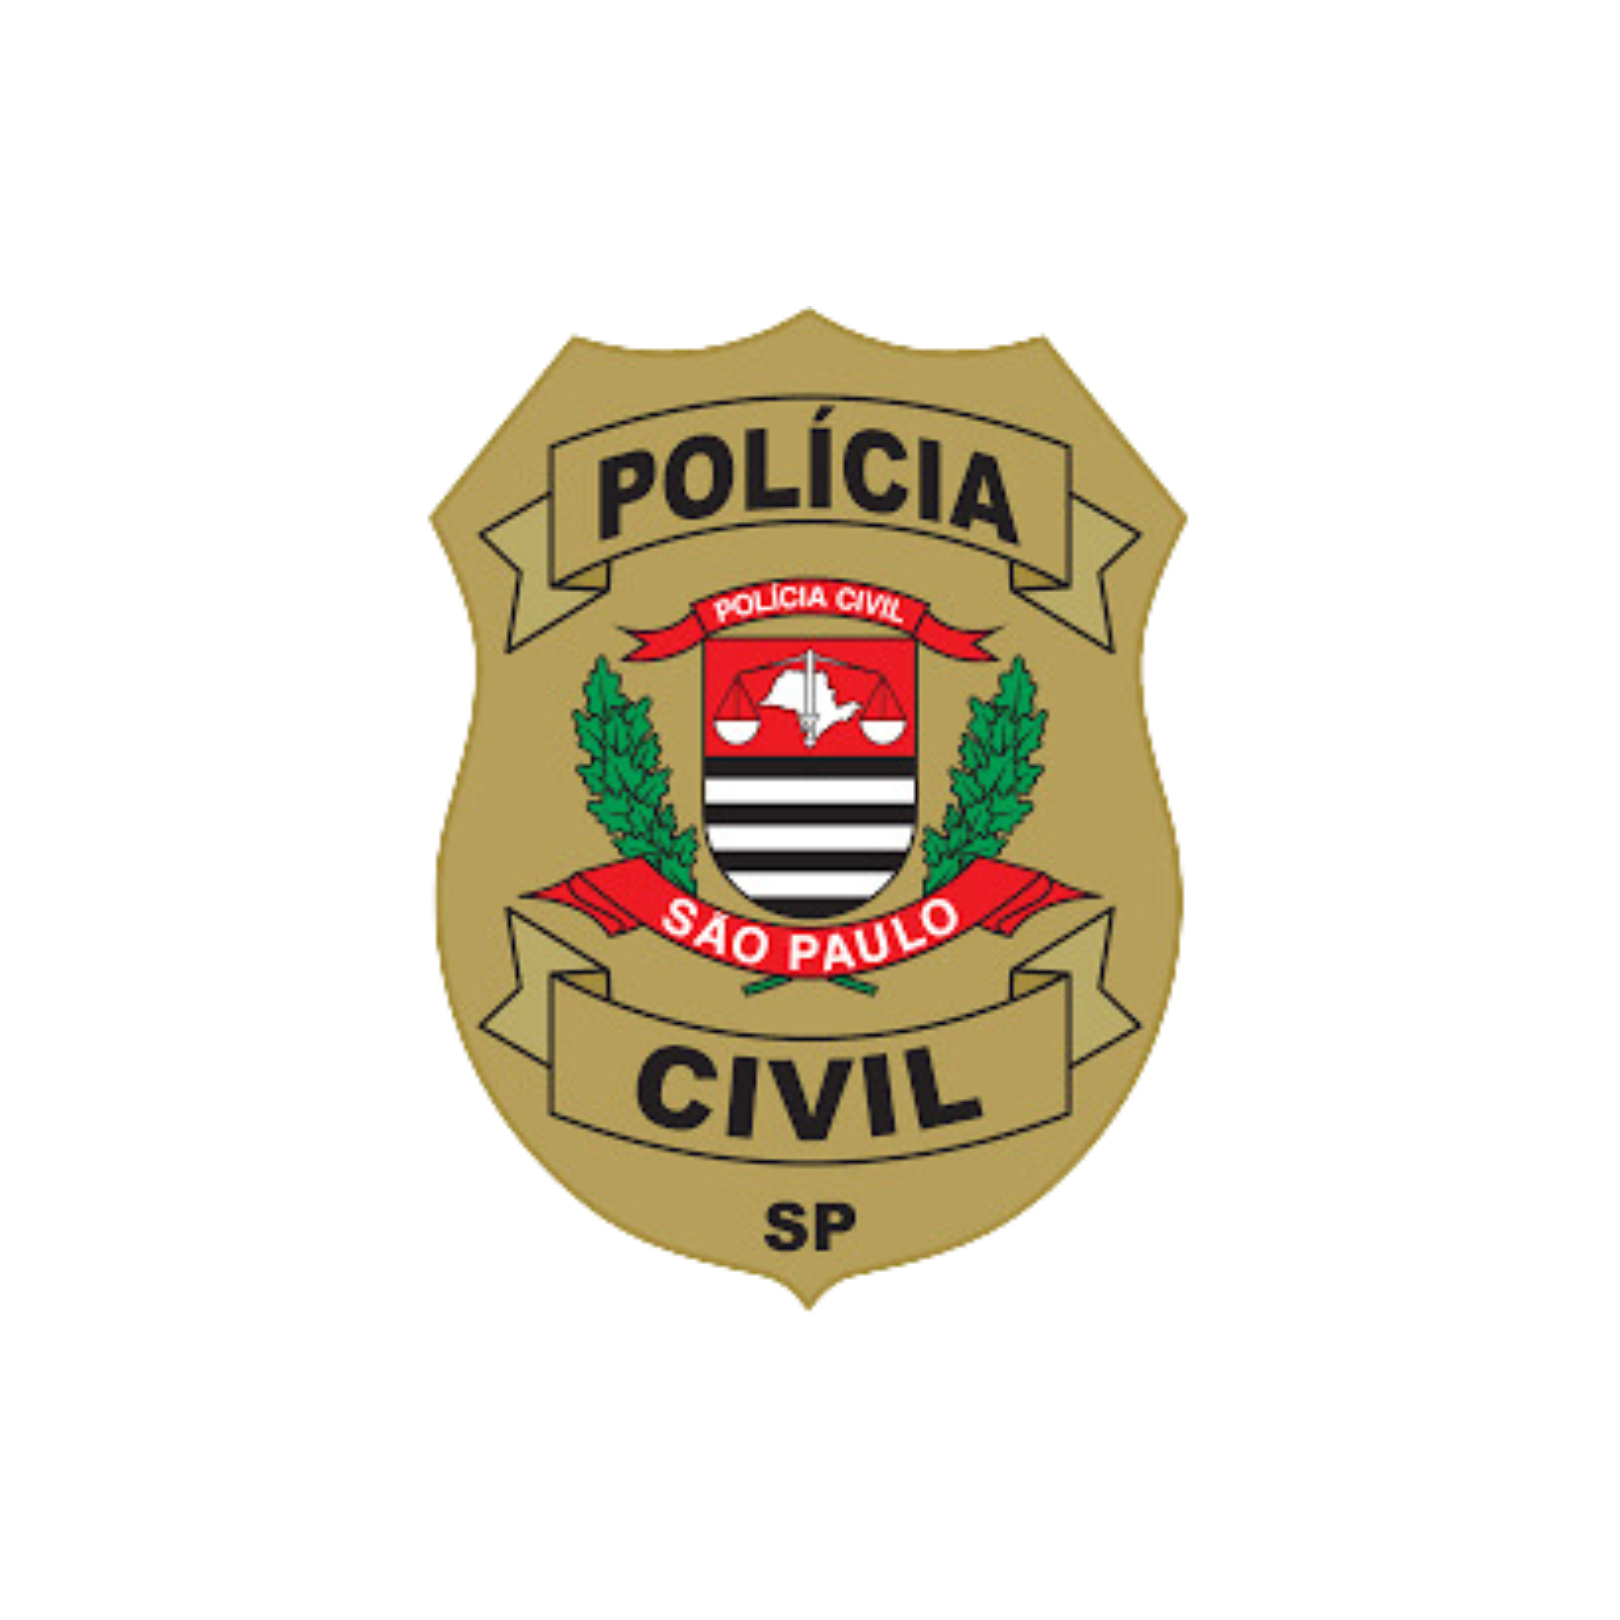 Polícia Civil SP